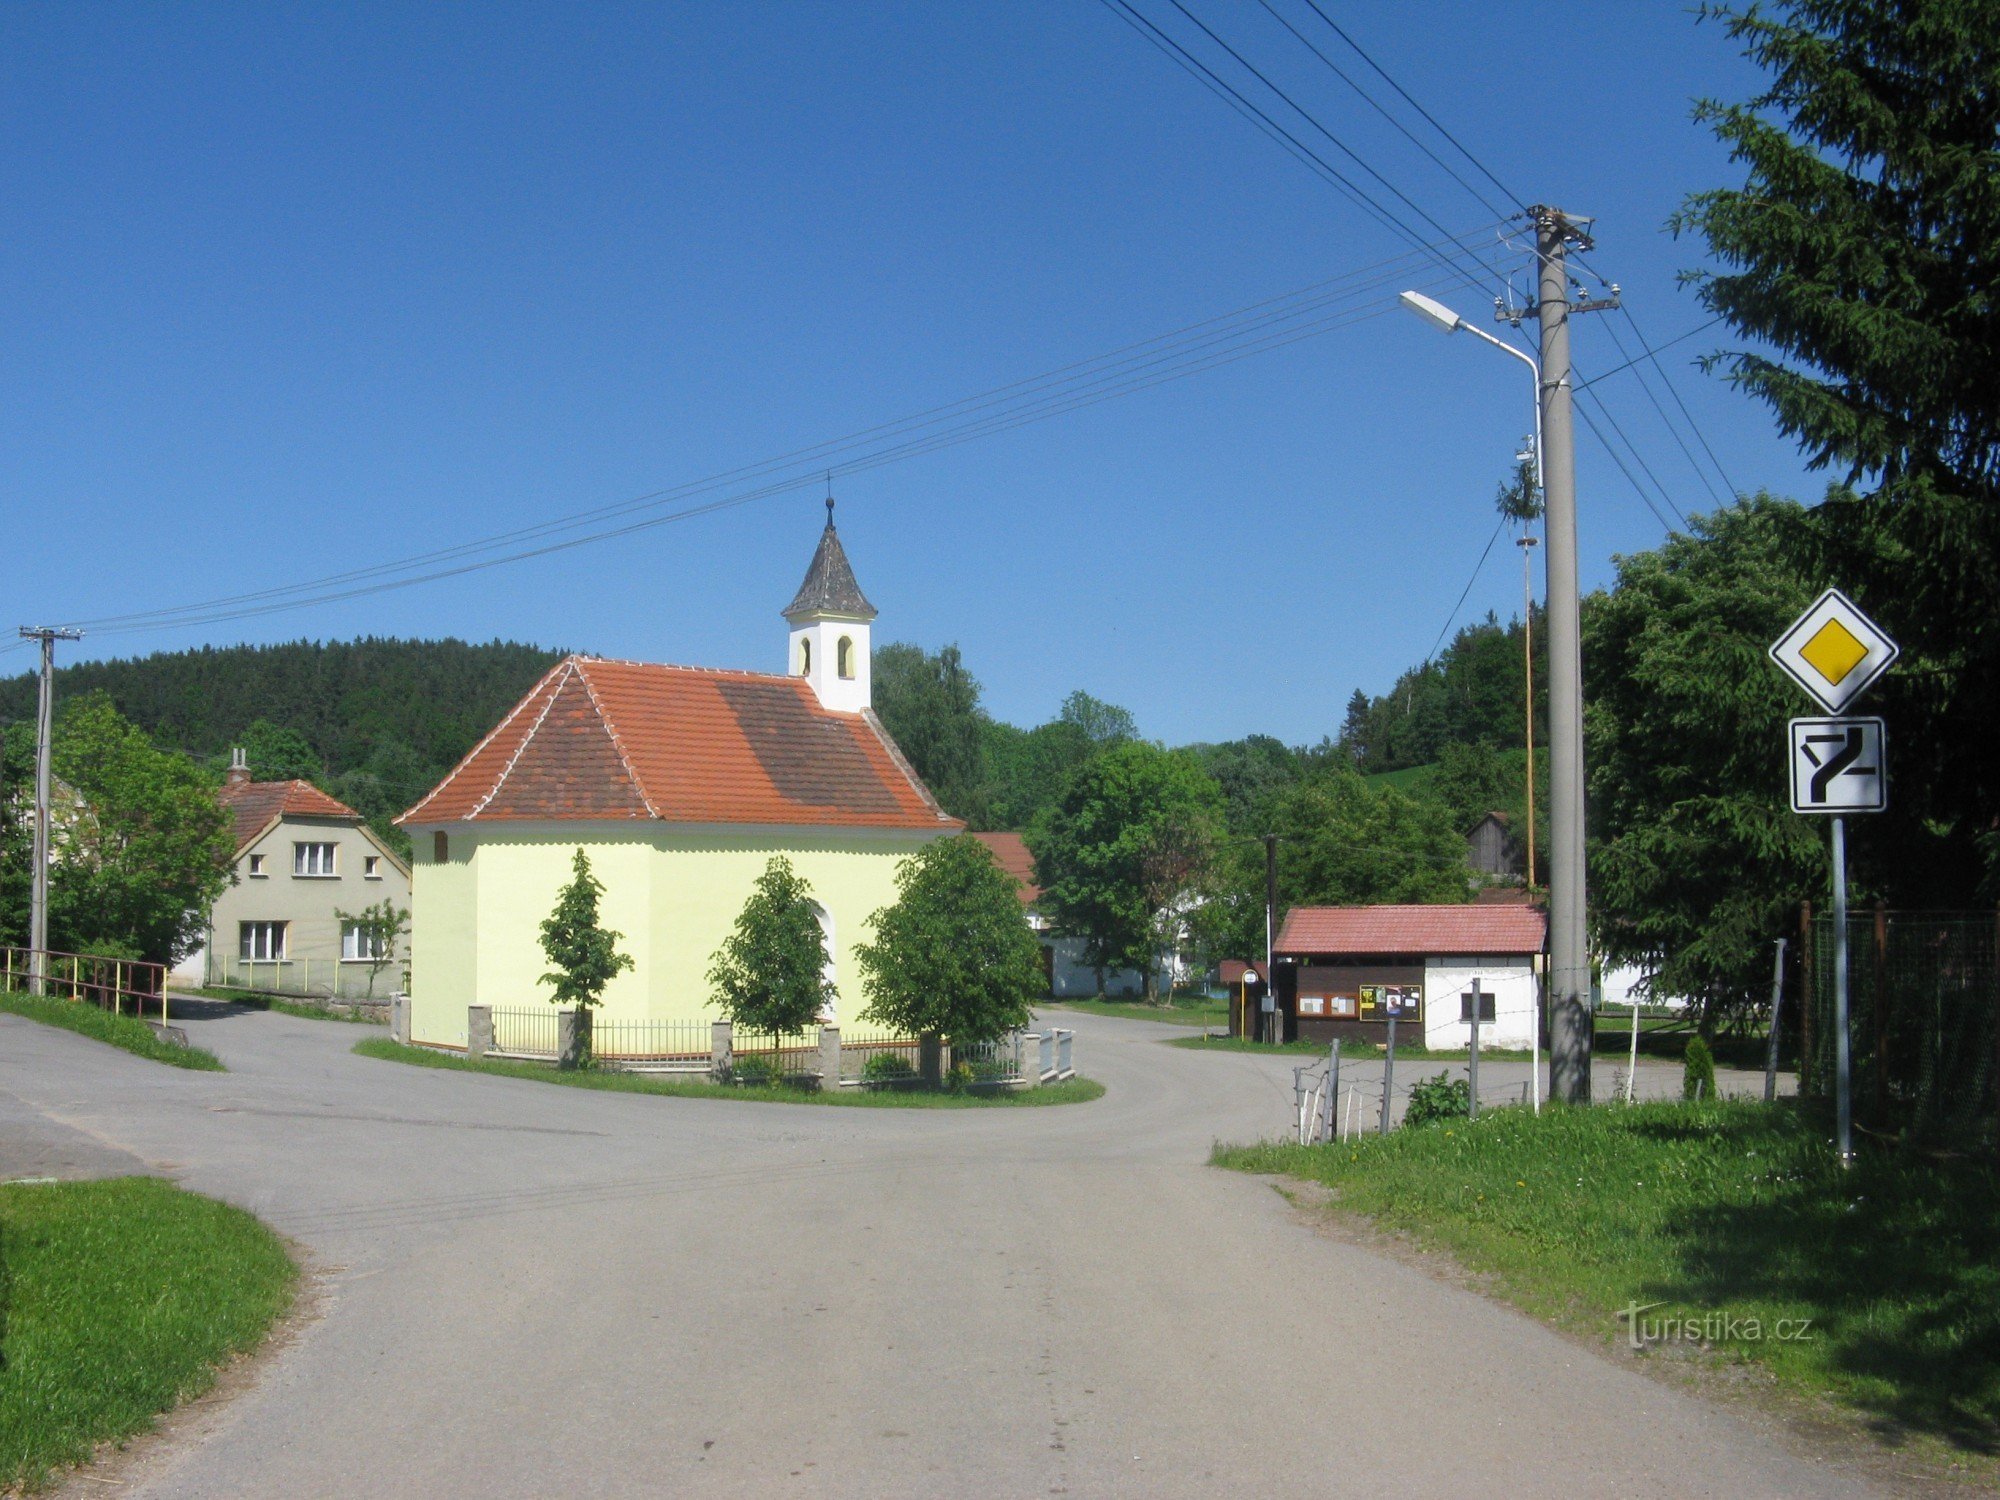 Kapel i landsbyen